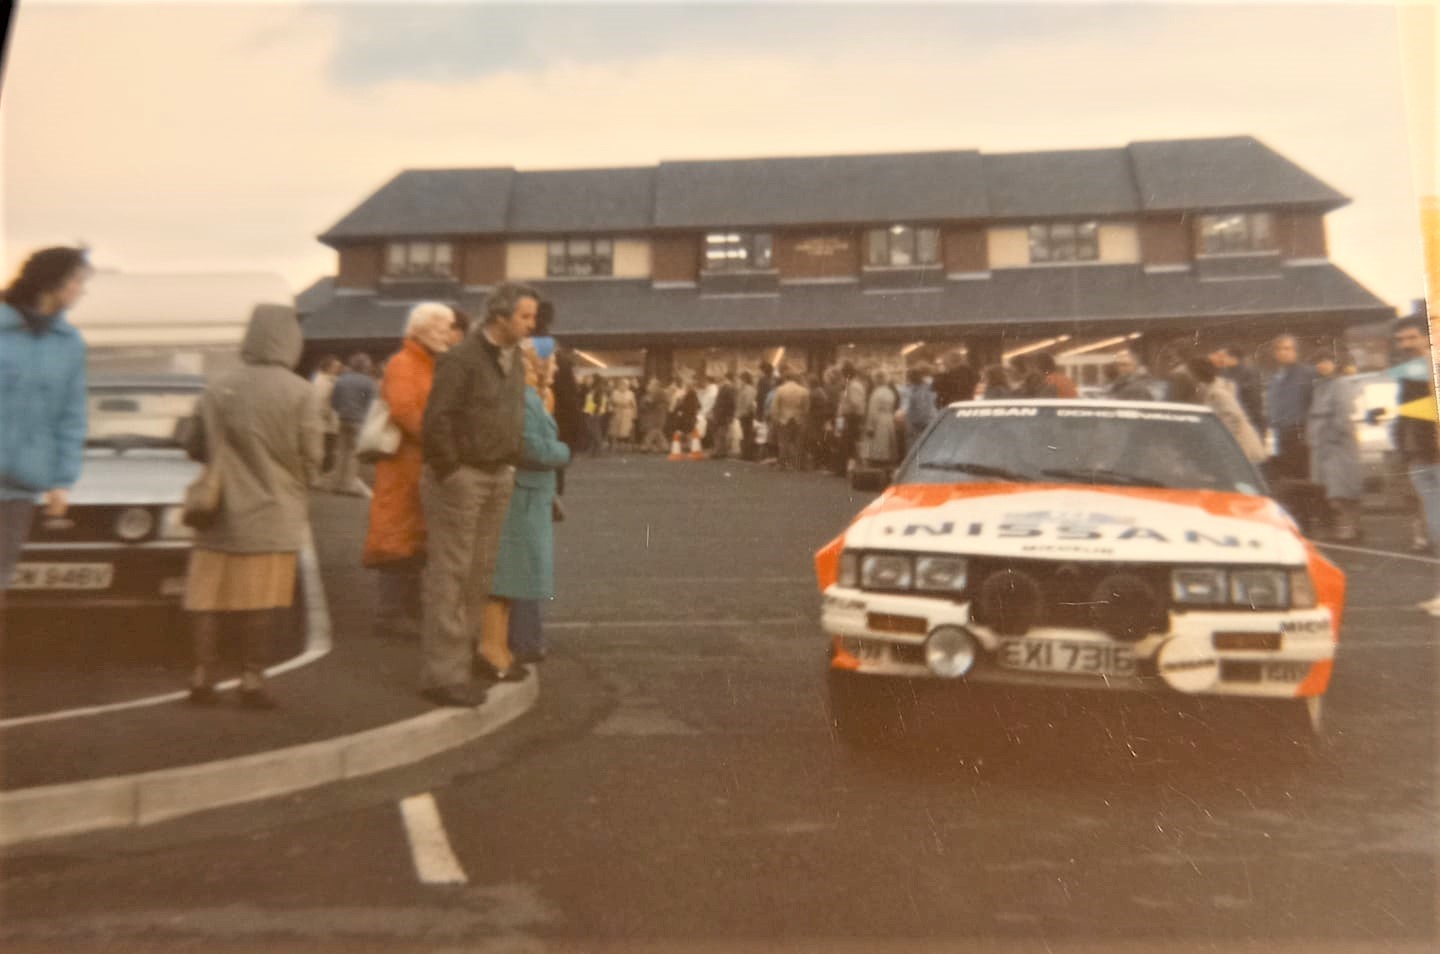 Terry Kaby in Mold, RAC Rally November 1984. Photo courtesy of Howard Smith